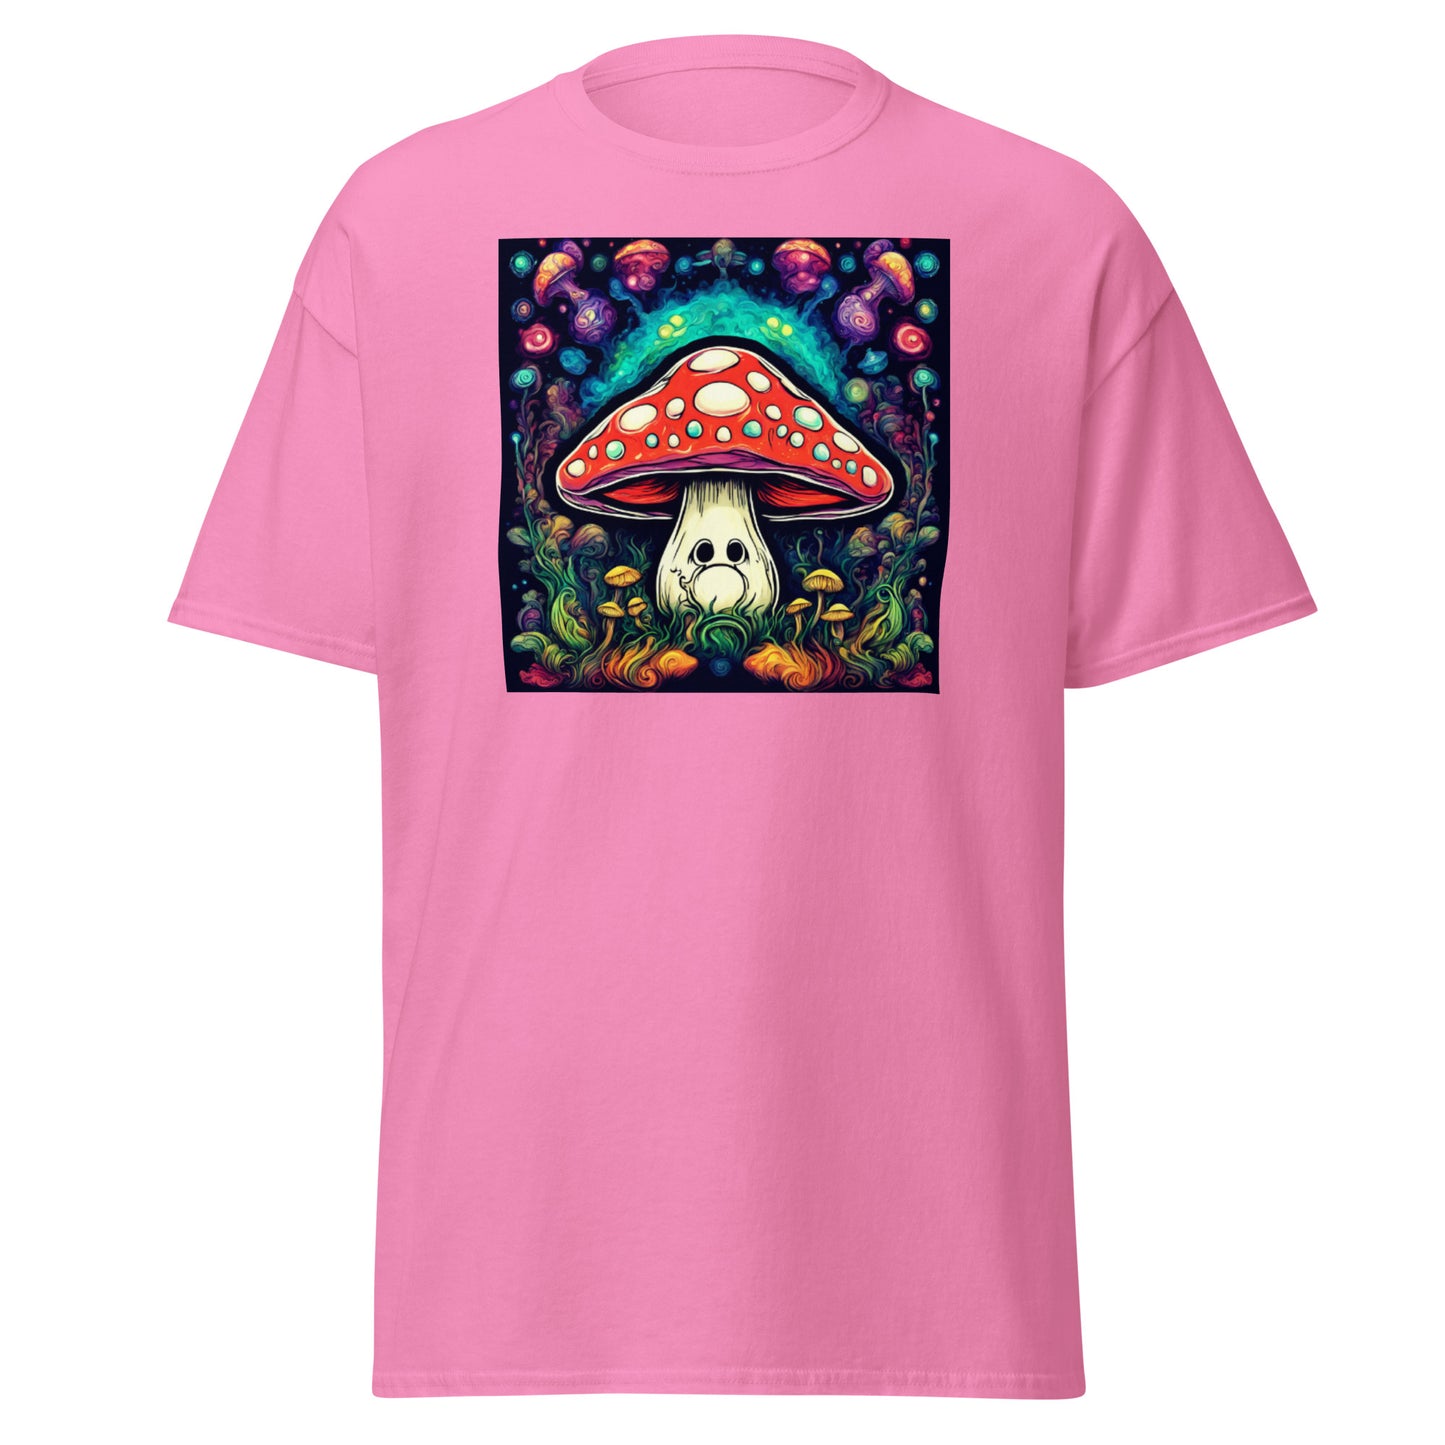 Men's trippy Mushroom shirt